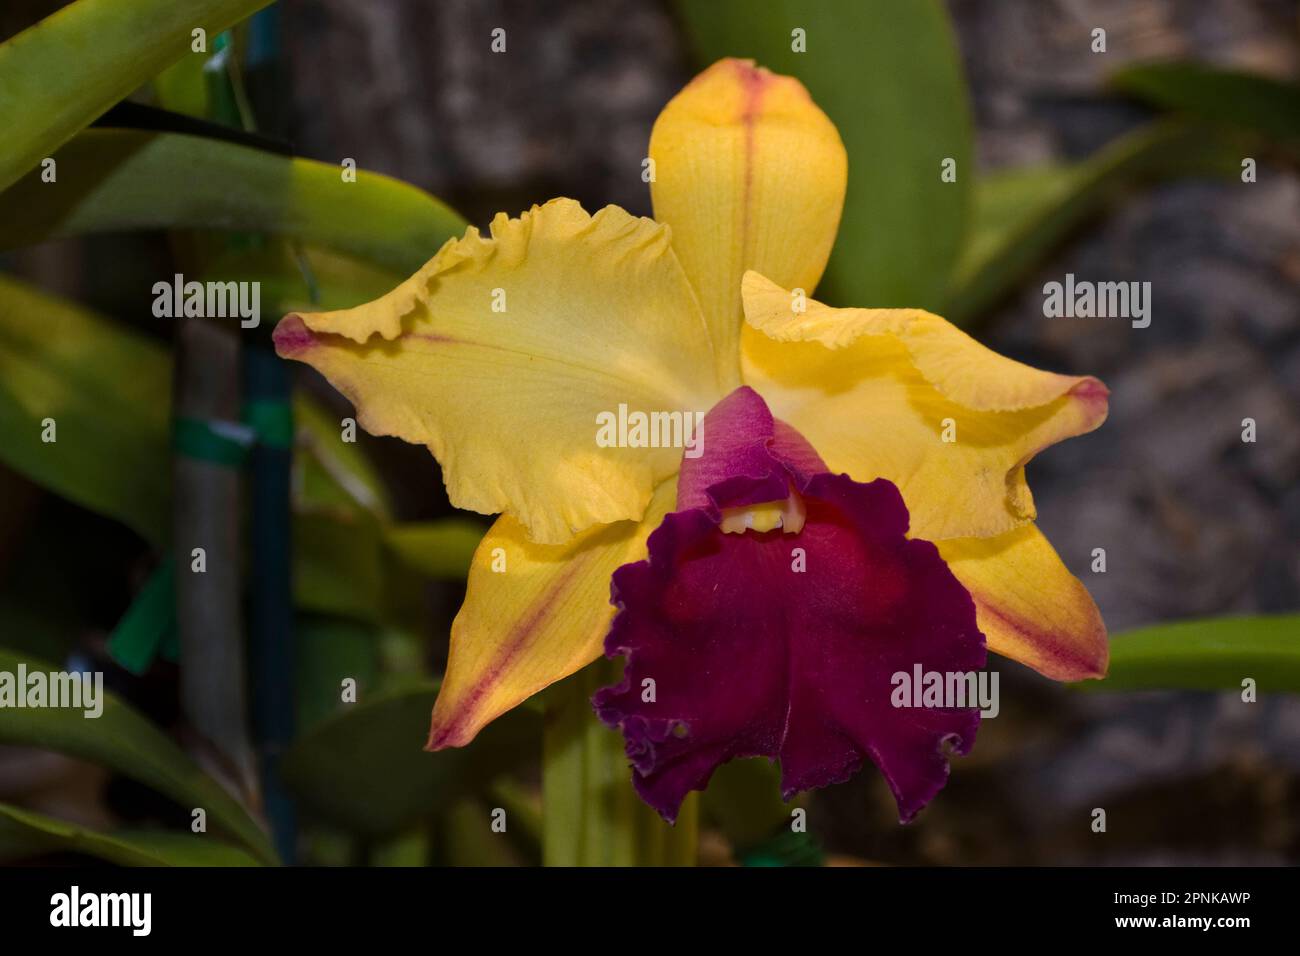 Bellissimo fiore di Cattleya Orchid con petali gialli e bungundy e foglie verdi Foto Stock